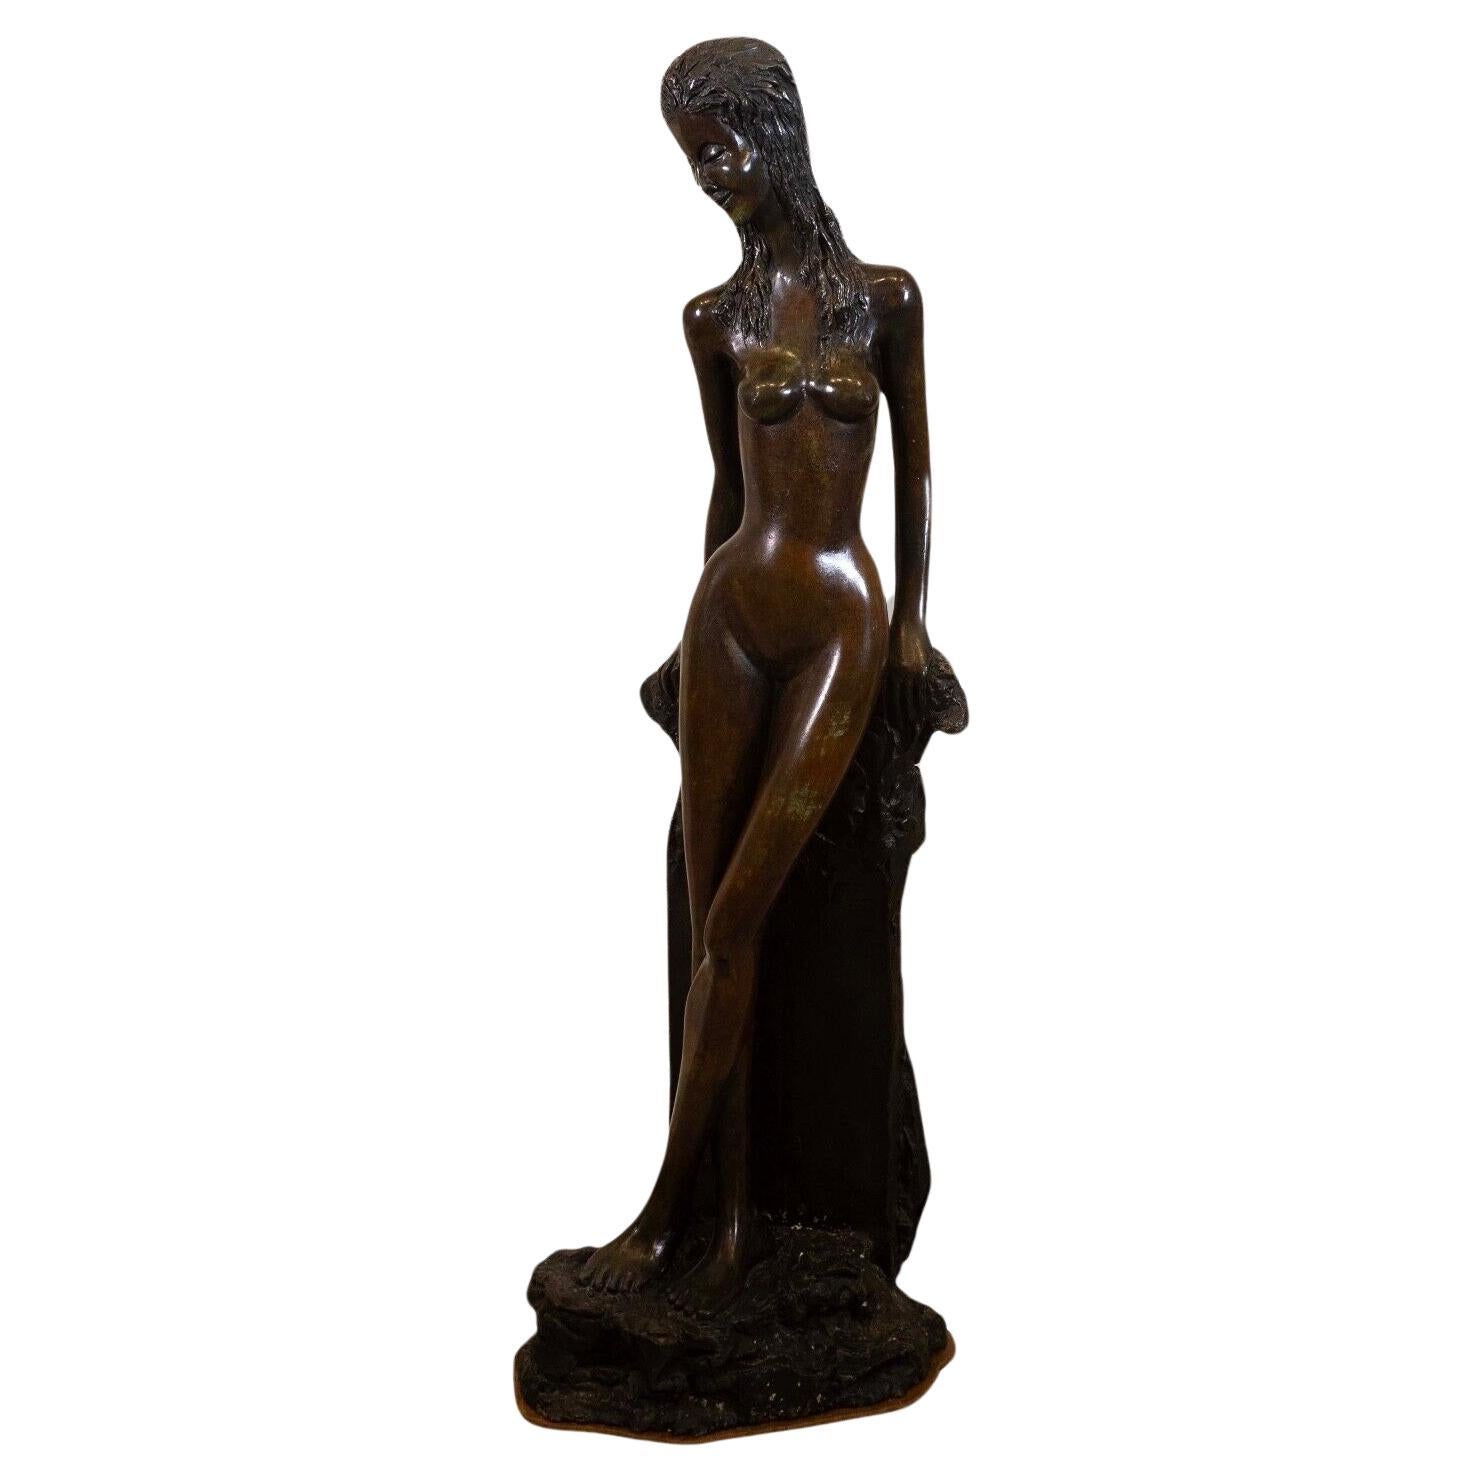 Art Deco Nouveau Modern Female Nude Bronze Decorative Figurative Sculpture For Sale